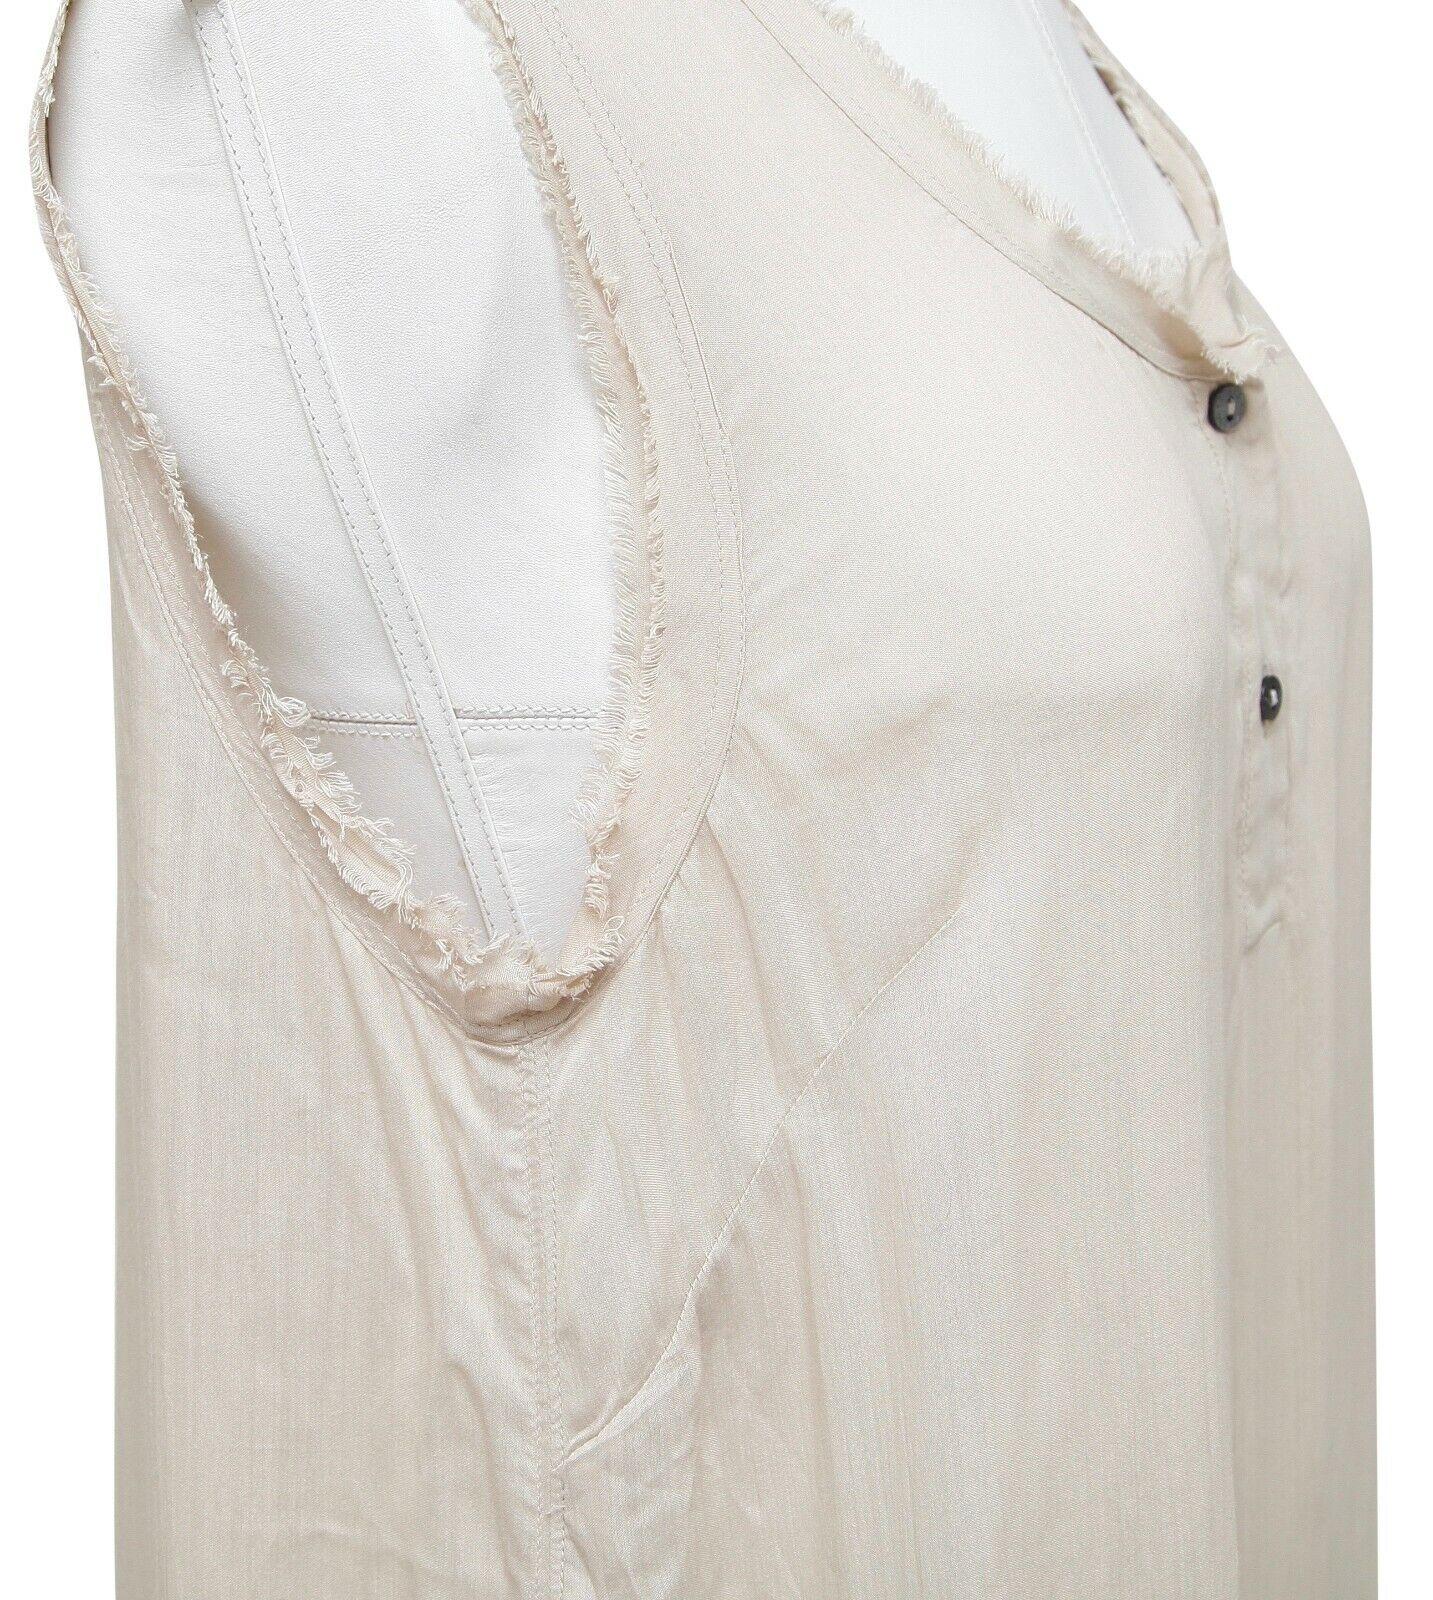 DOLCE & GABBANA Sleeveless Shirt Top Beige Buttons Viscose Silk Sz 42 For Sale 2